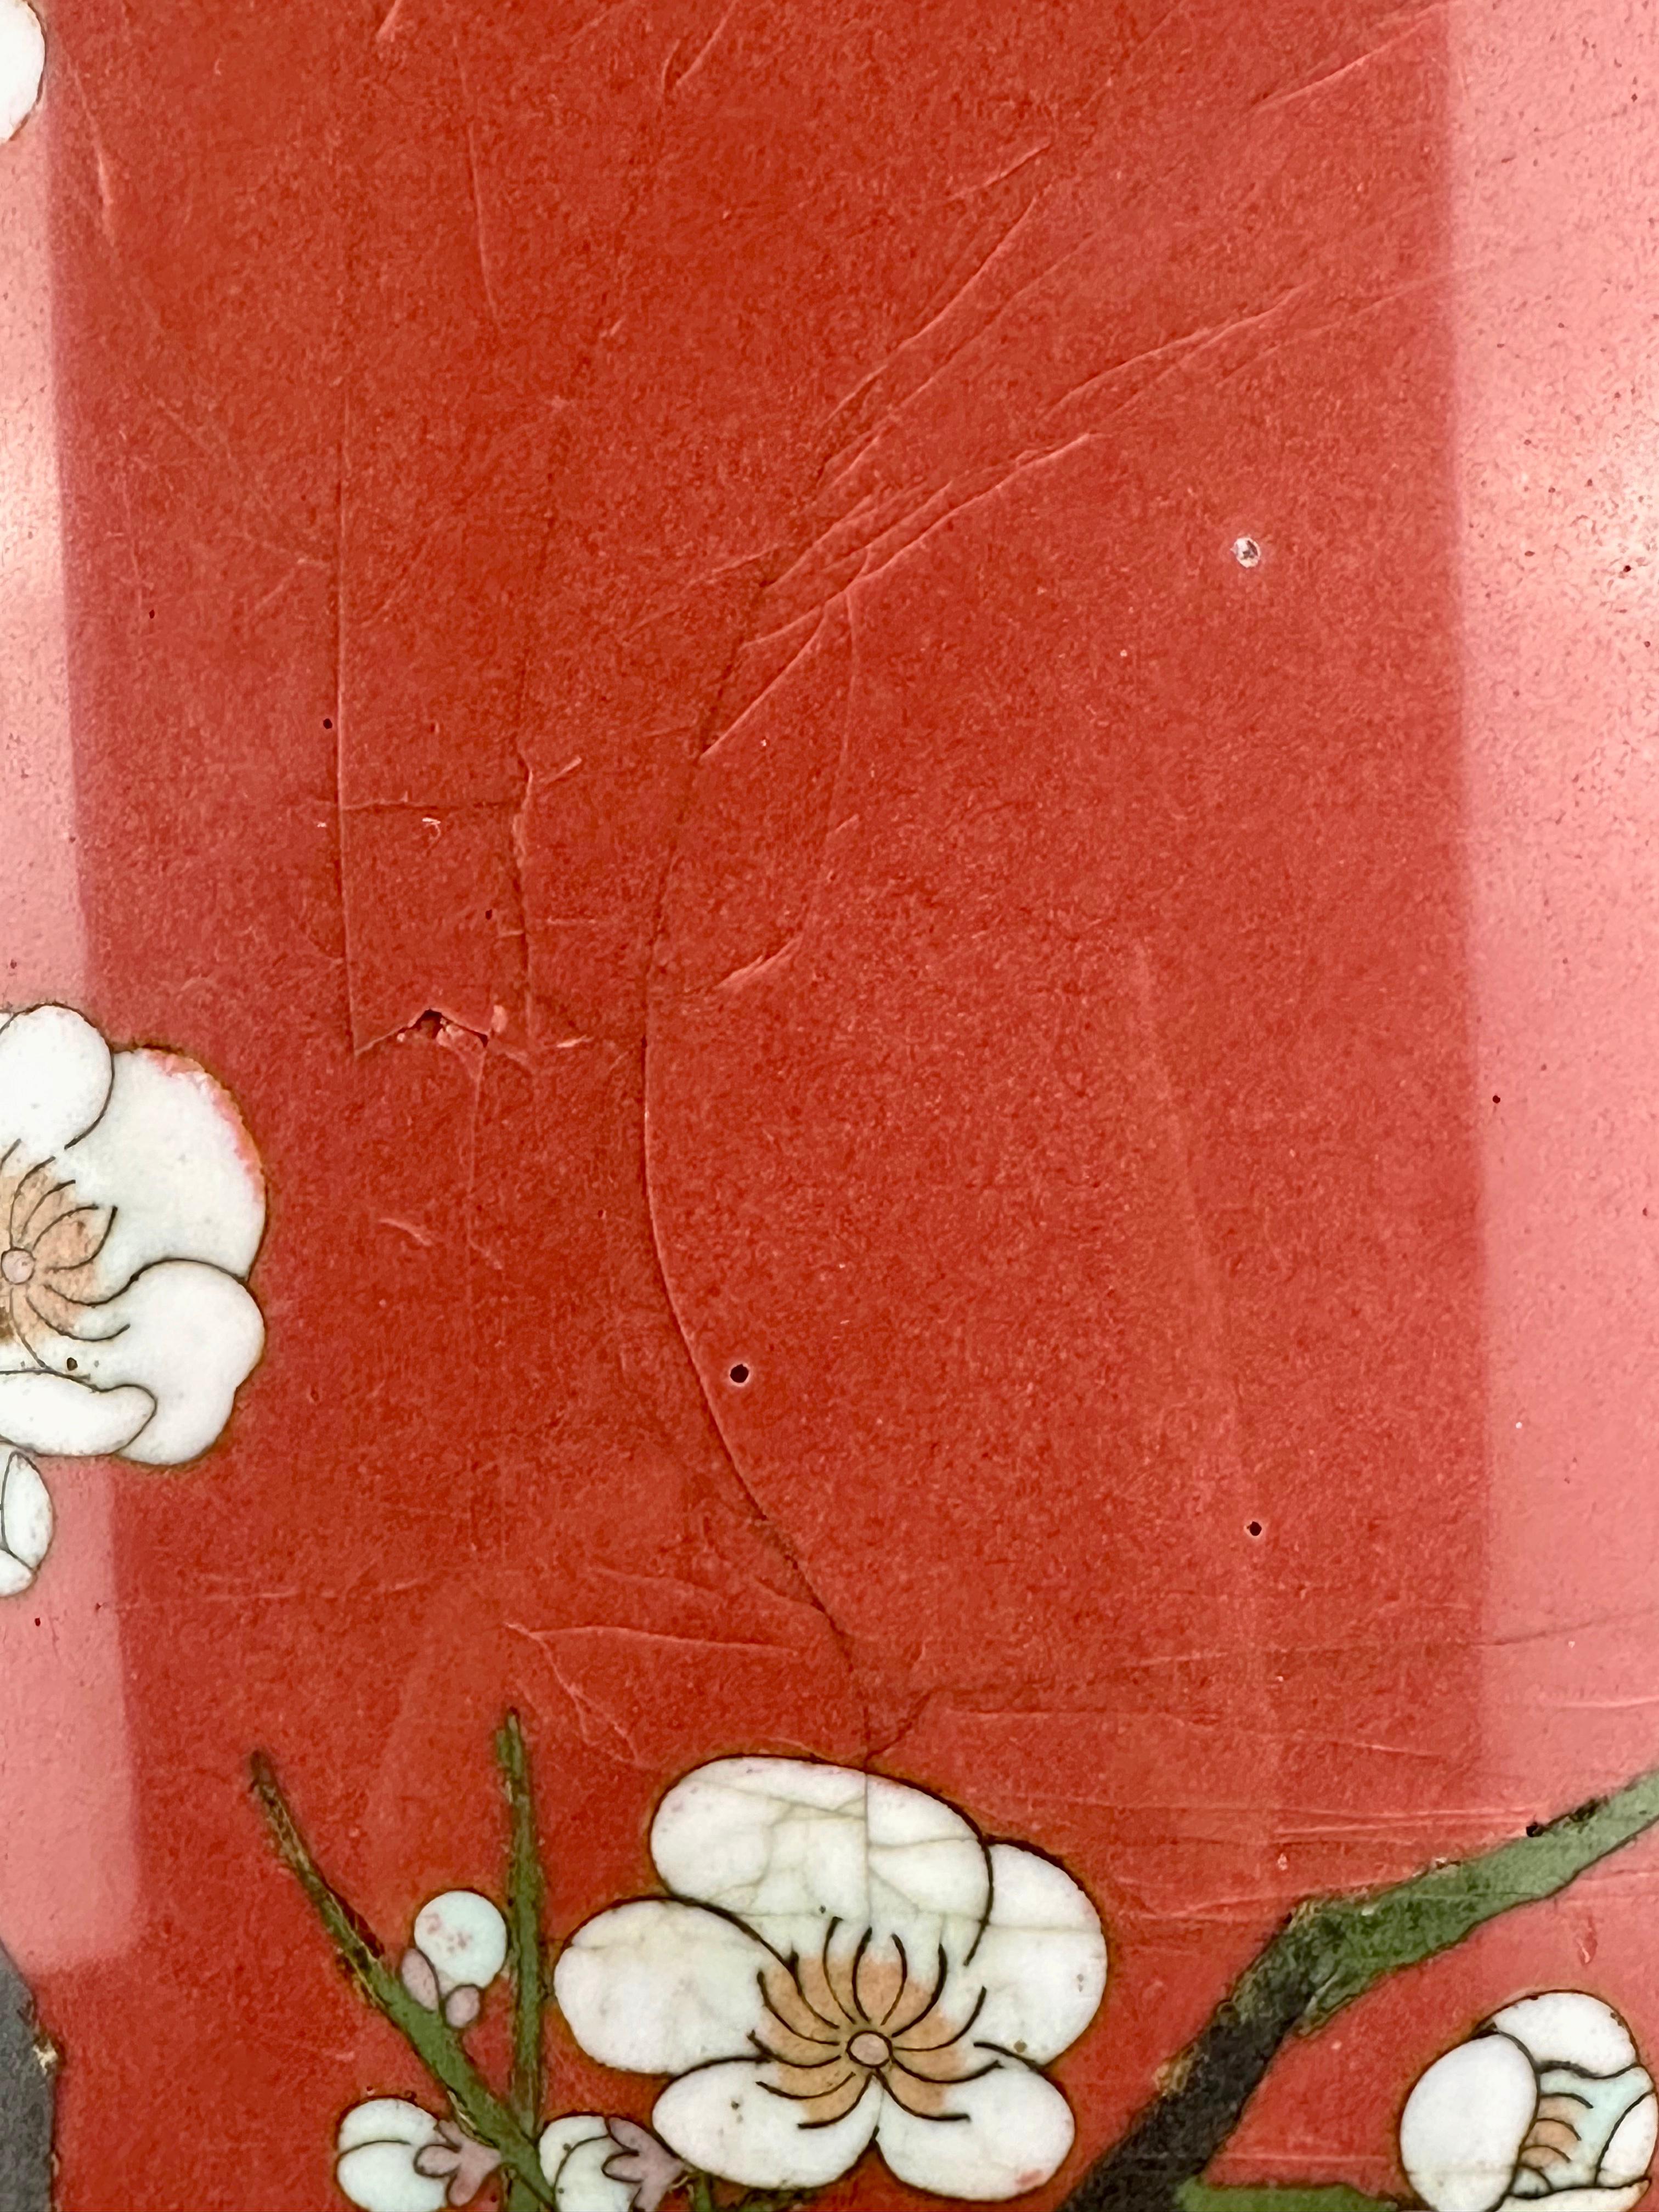 Très rare vase cloisonné japonais ancien de l'ère Meiji (fin des années 1800) Falcon 34